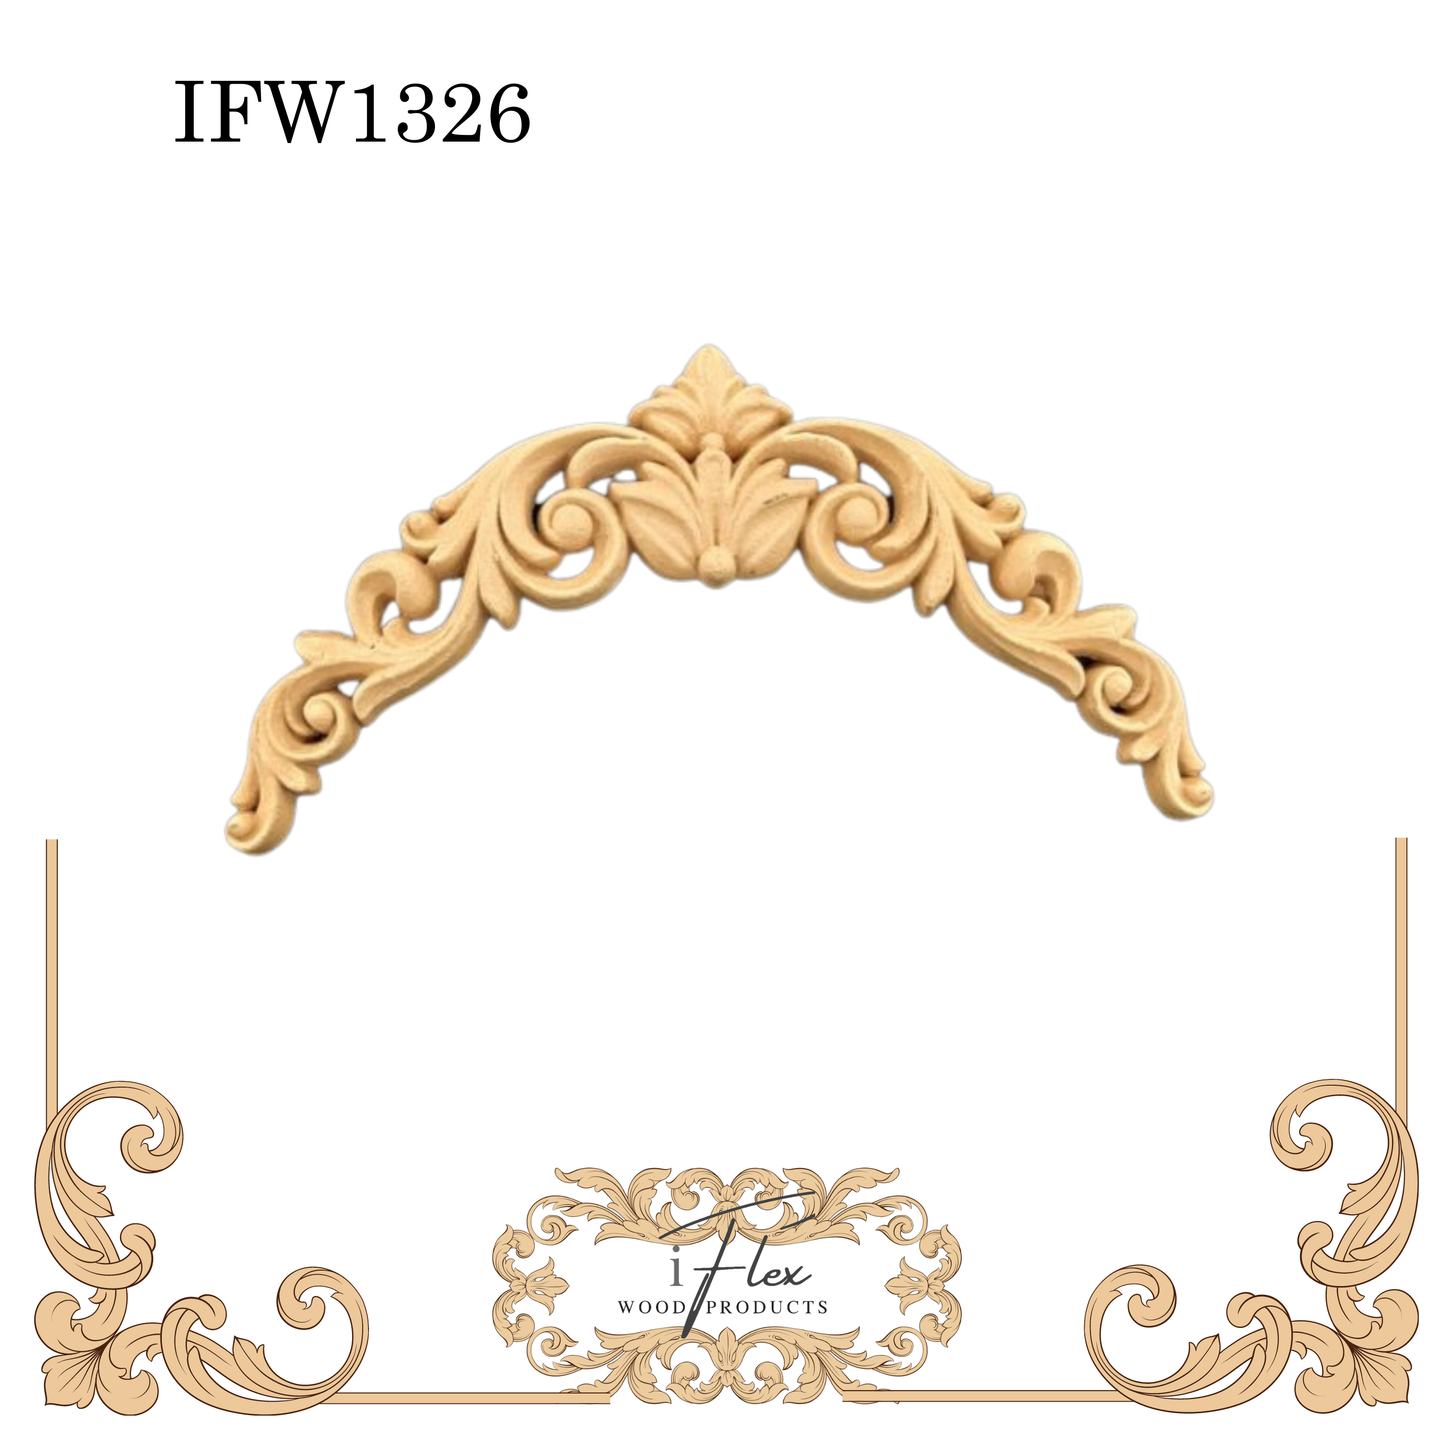 IFW 1326